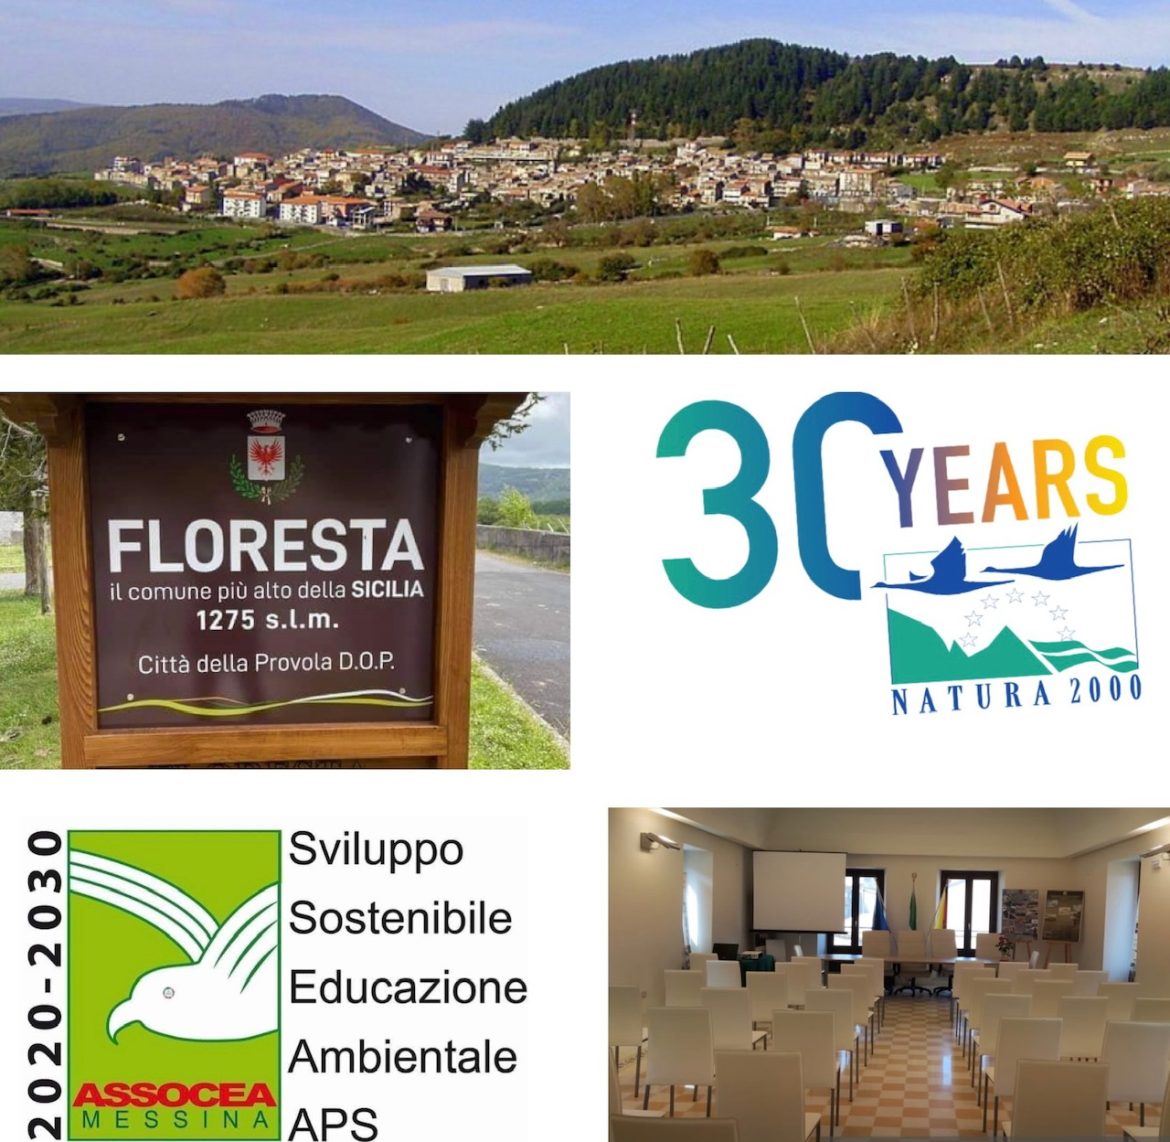 Messina, I primi 30 Anni di Rete Natura 2000. Appuntamento sabato 21 maggio 2022 a Palazzo “Landro Scalisi” di Floresta